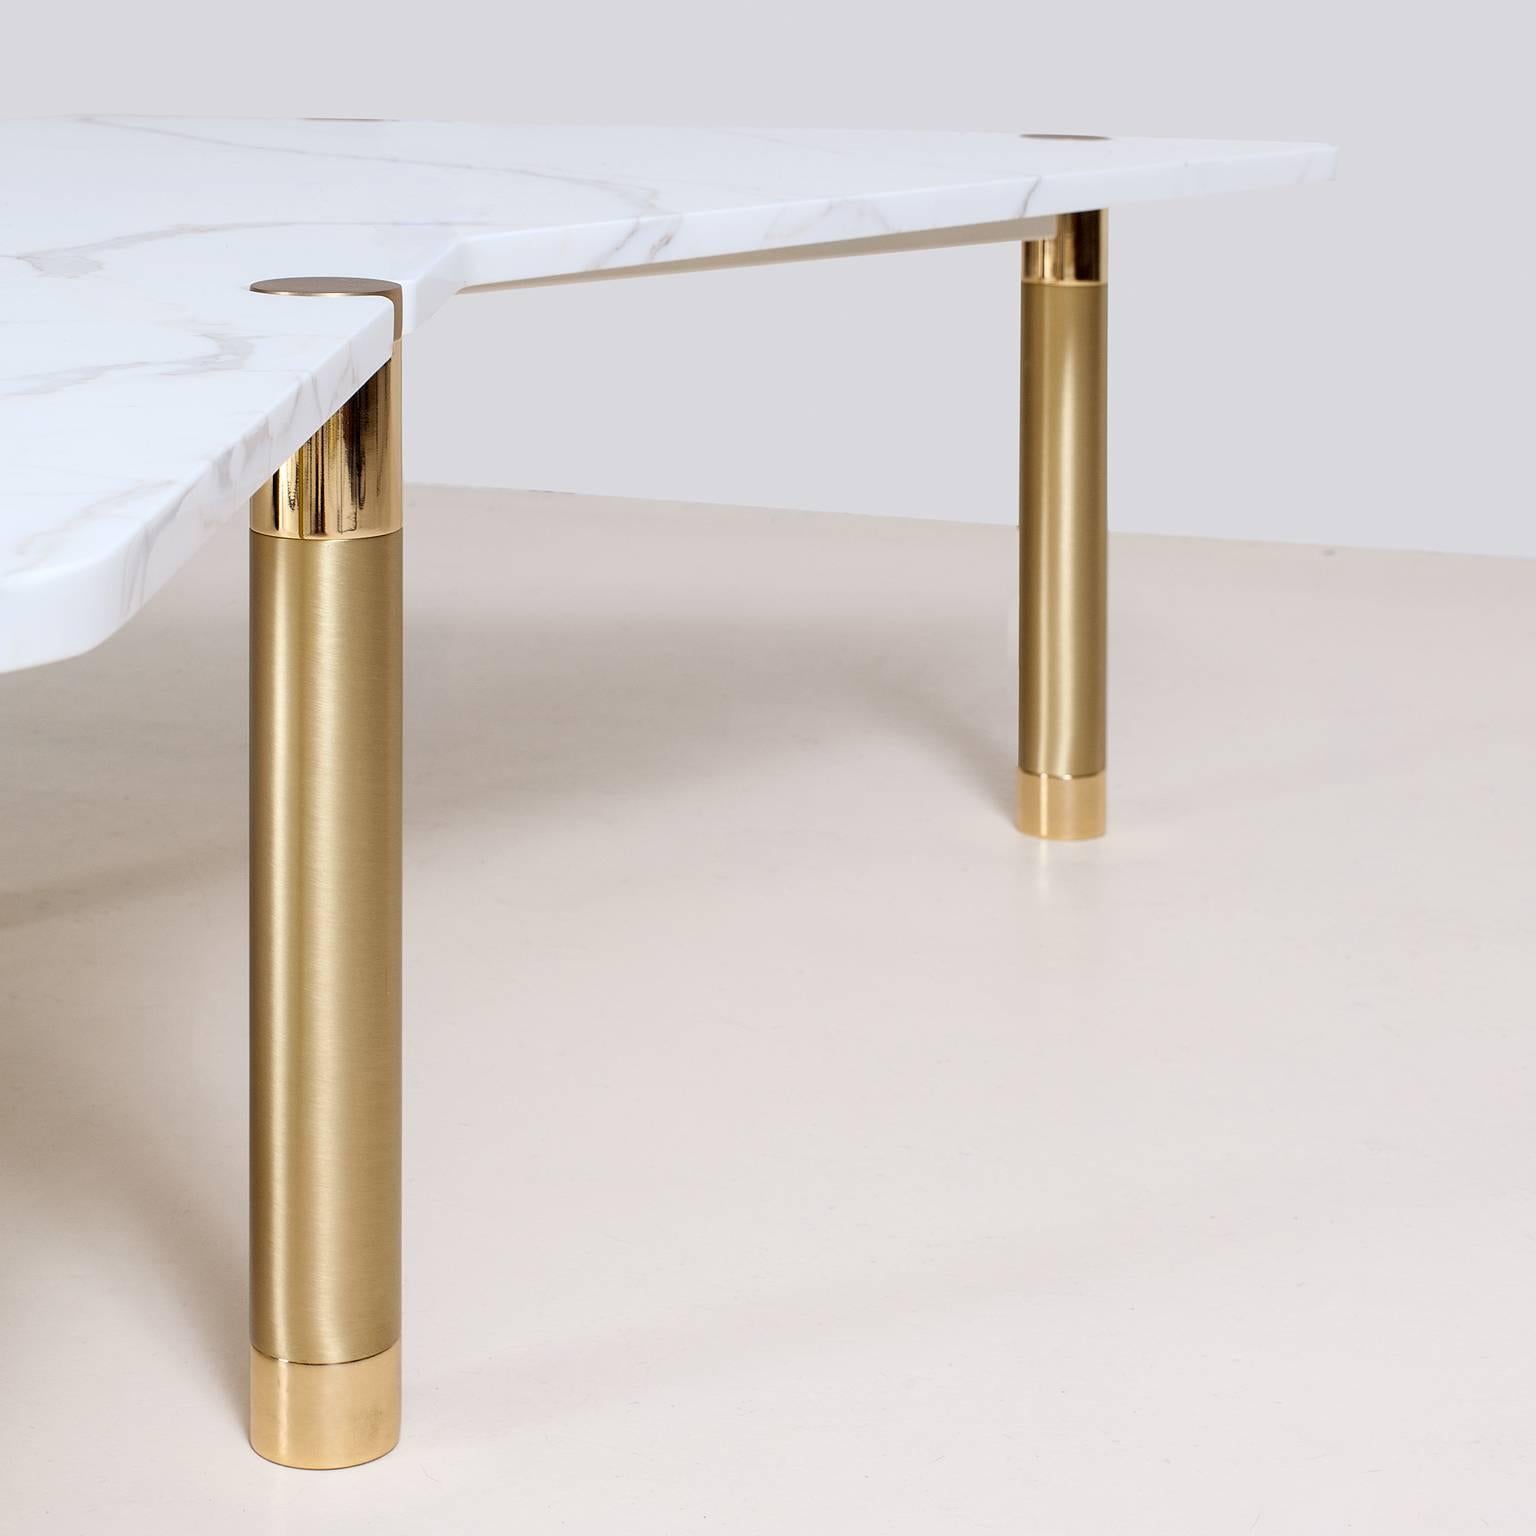 Die Nova Table Collection kombiniert verschiedene Metalloberflächen mit Holz- und Marmorplatten in unterschiedlichen Formen und Größen. Wählen Sie aus den verfügbaren Optionen oder spezifizieren Sie Ihr eigenes Oberteil und den Mix der